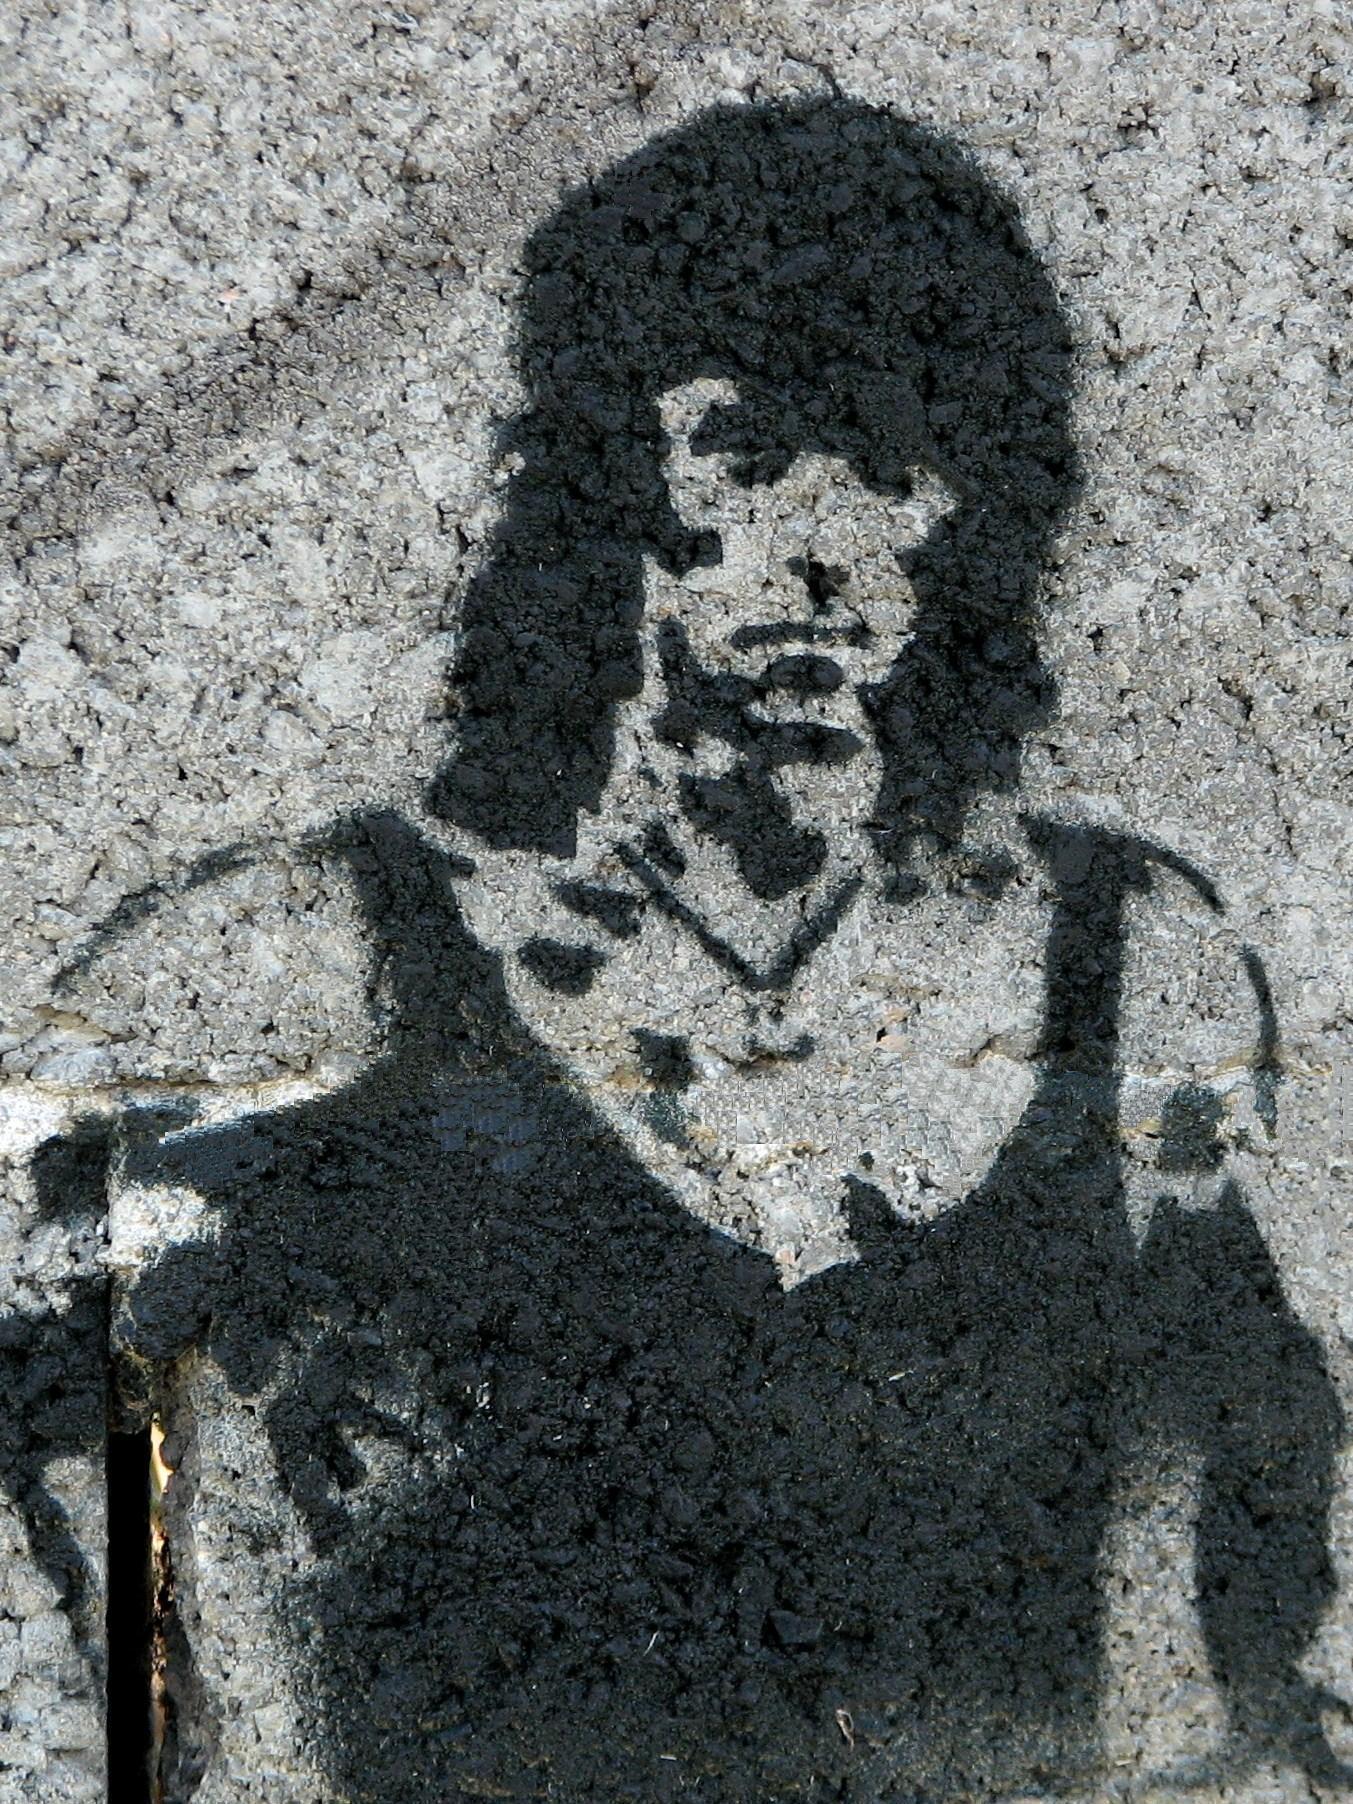 http://upload.wikimedia.org/wikipedia/commons/a/a6/John_Rambo_graffiti.JPG